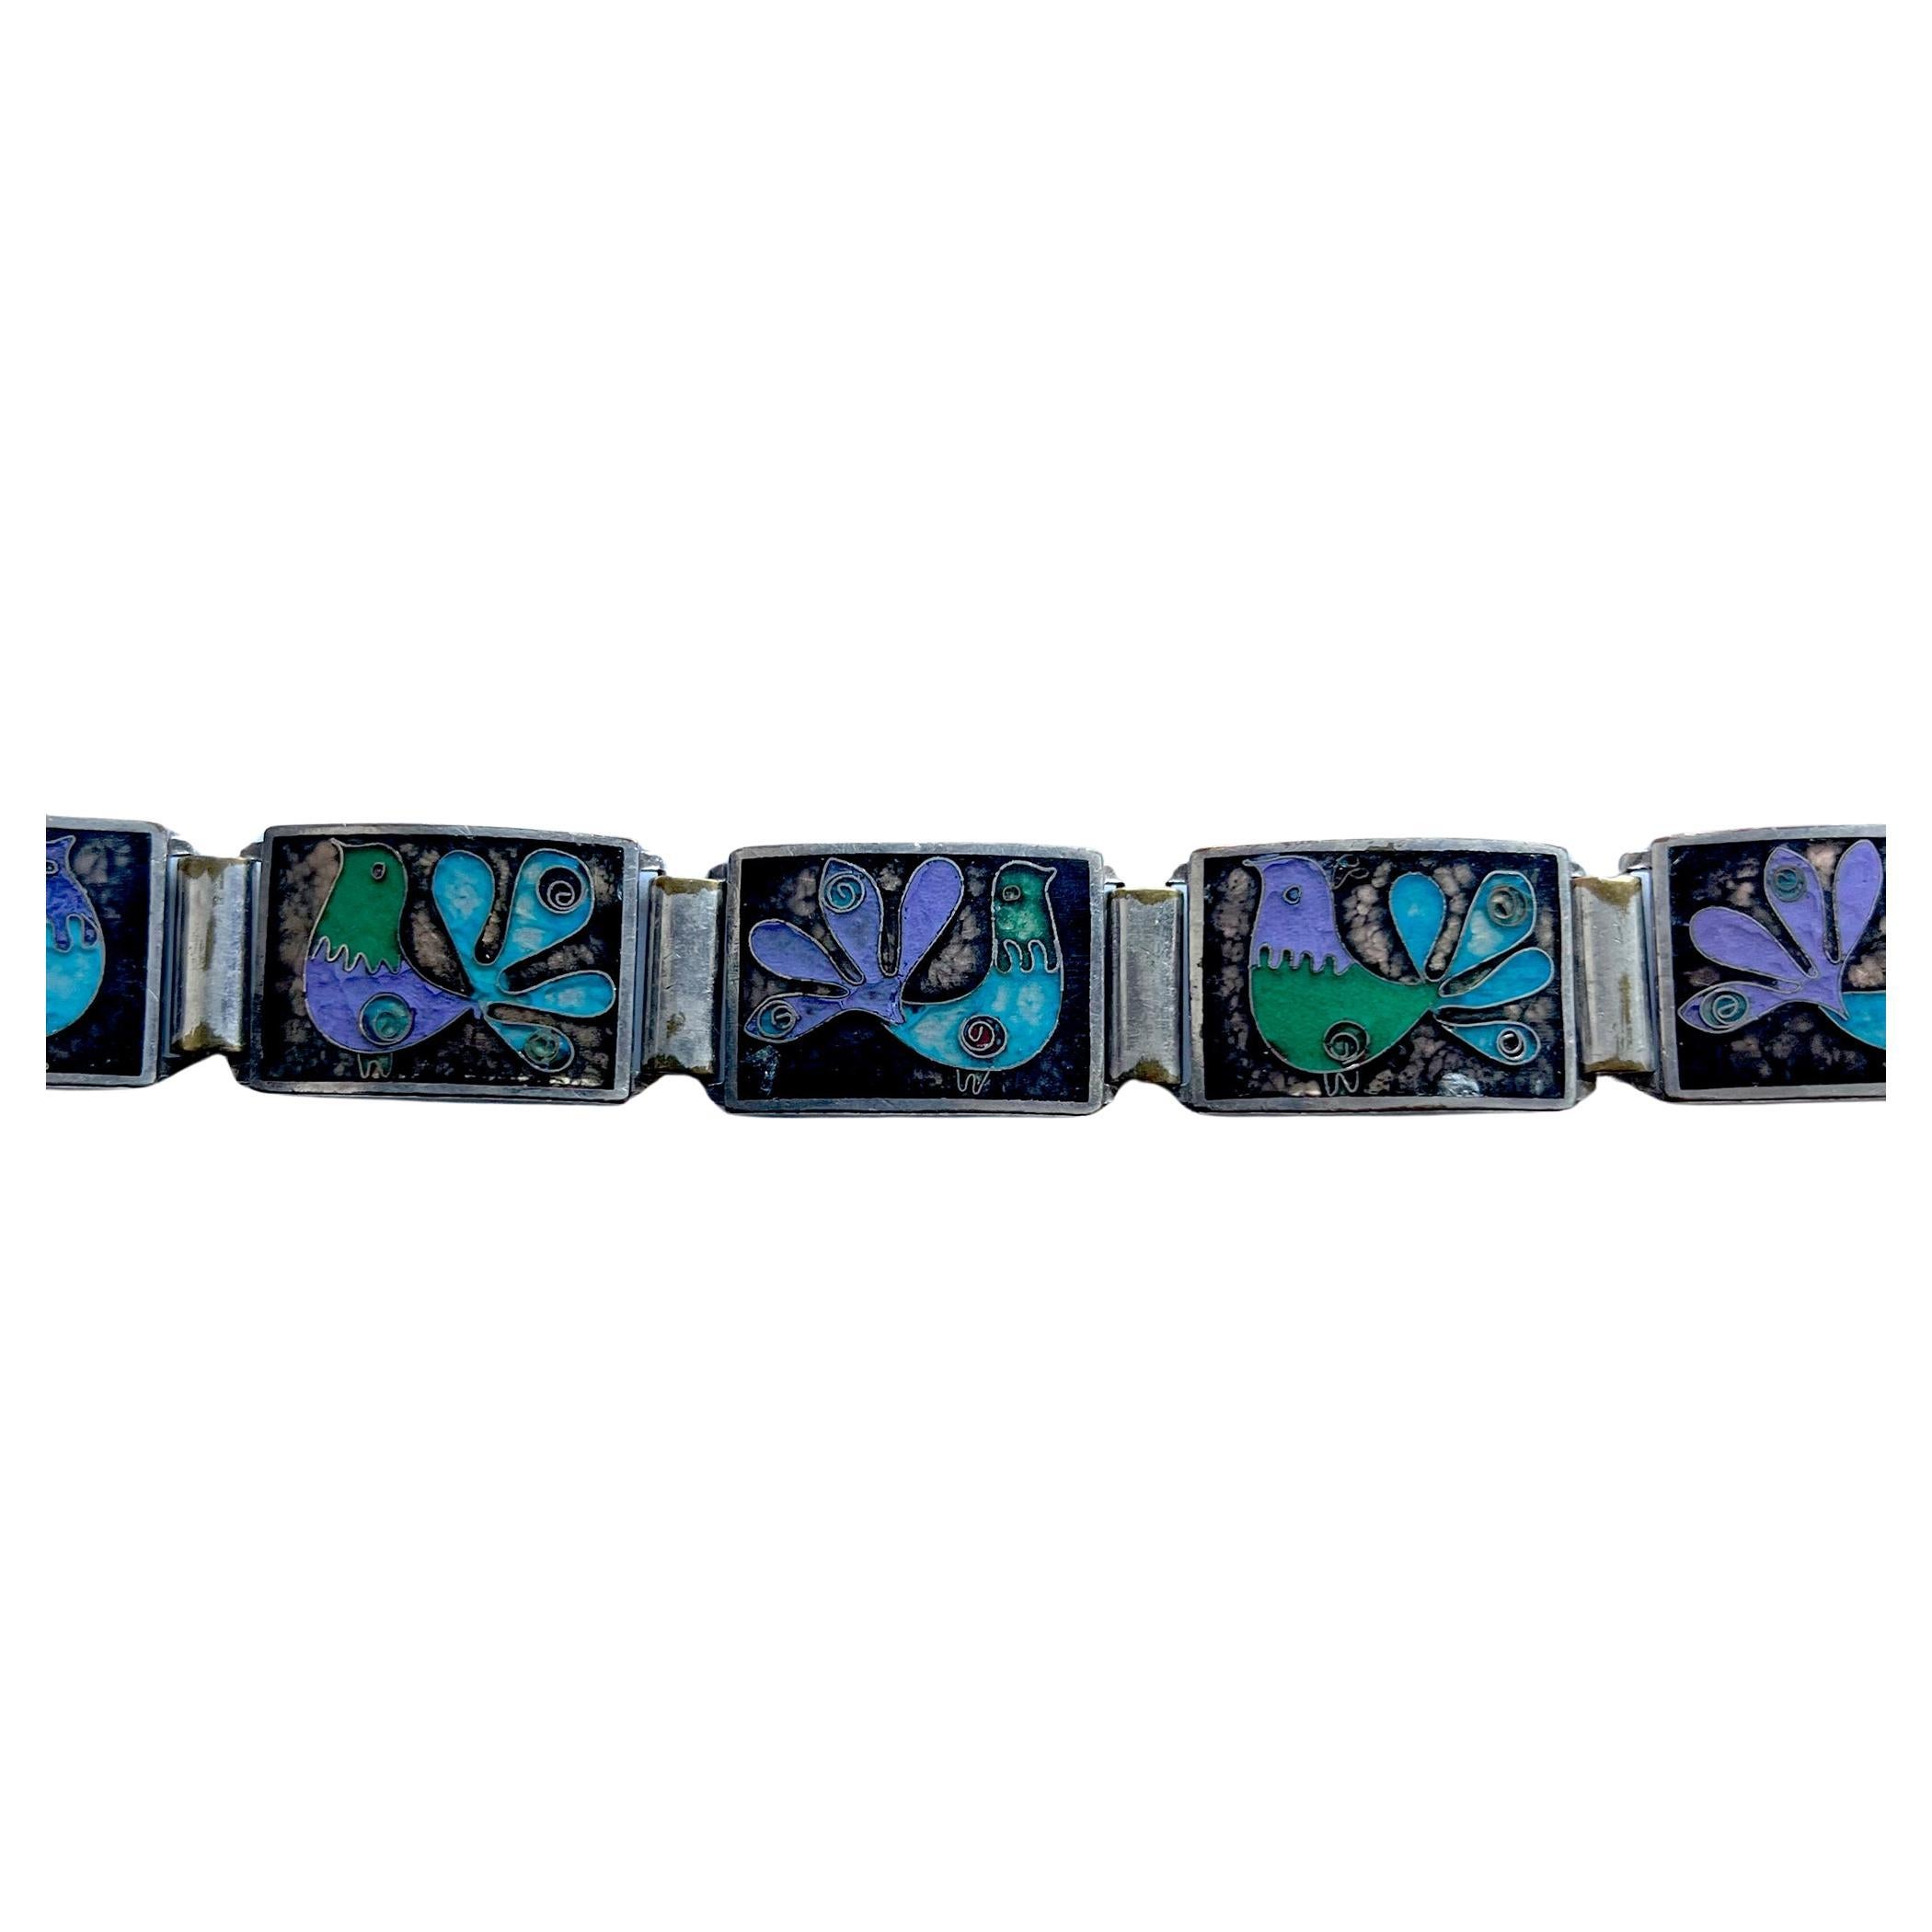 Deutsches modernistisches Armband aus Silber und Emaille, entworfen von Perli, ca. 1950er Jahre.  Vögel aus blauem, violettem und grünem Email in Cloisonné auf der Vorderseite und Gegenemail auf der Rückseite.  Das Armband misst 8